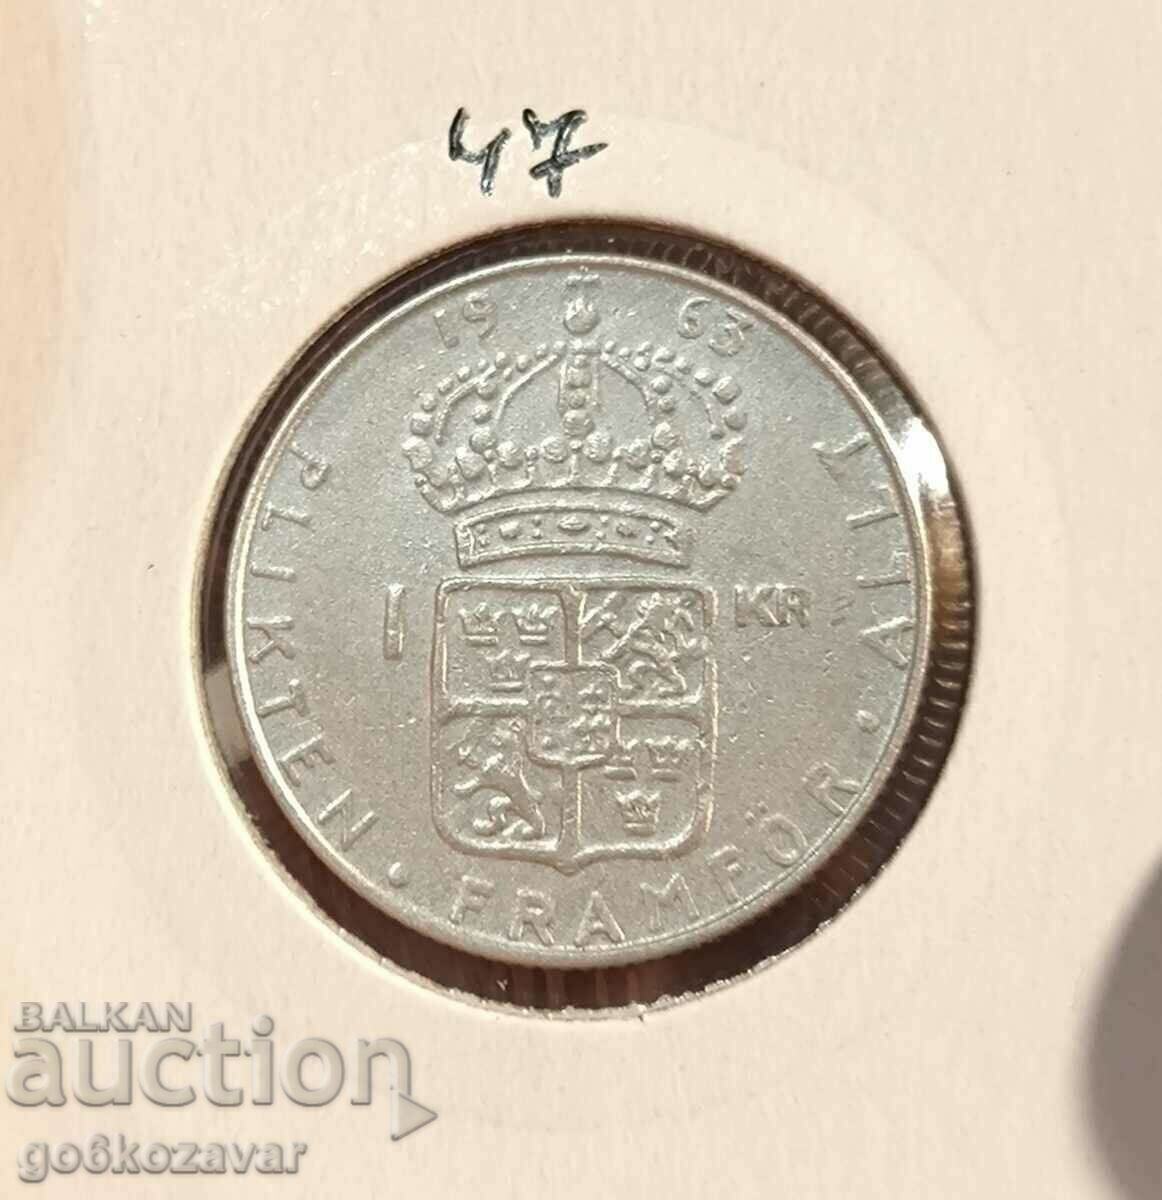 Sweden 1 kroner 1963 Silver !